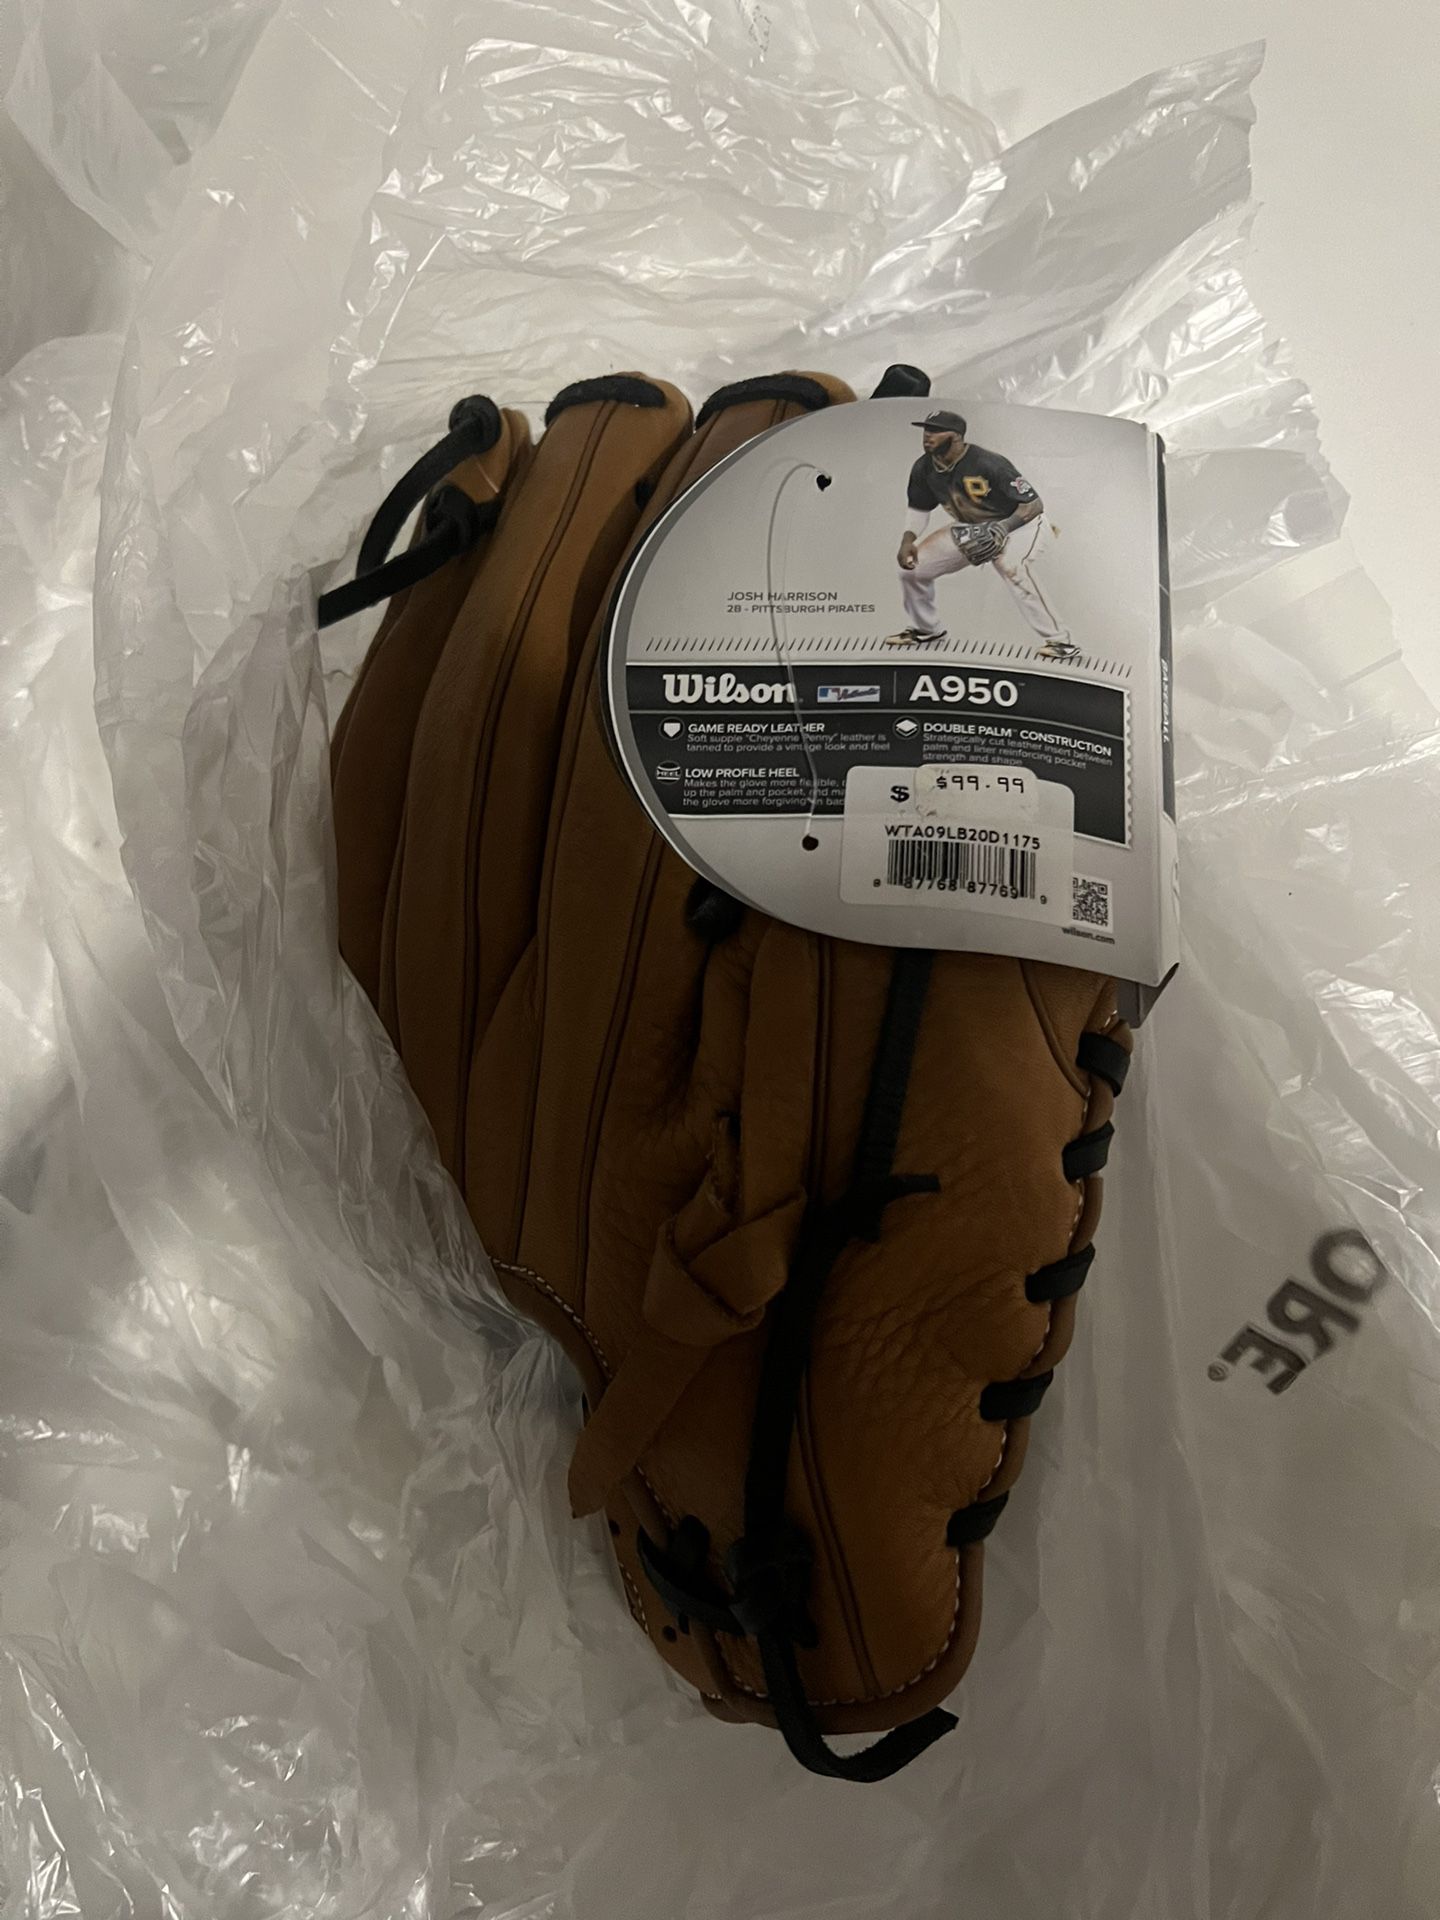 Wilson A950 Baseball Glove